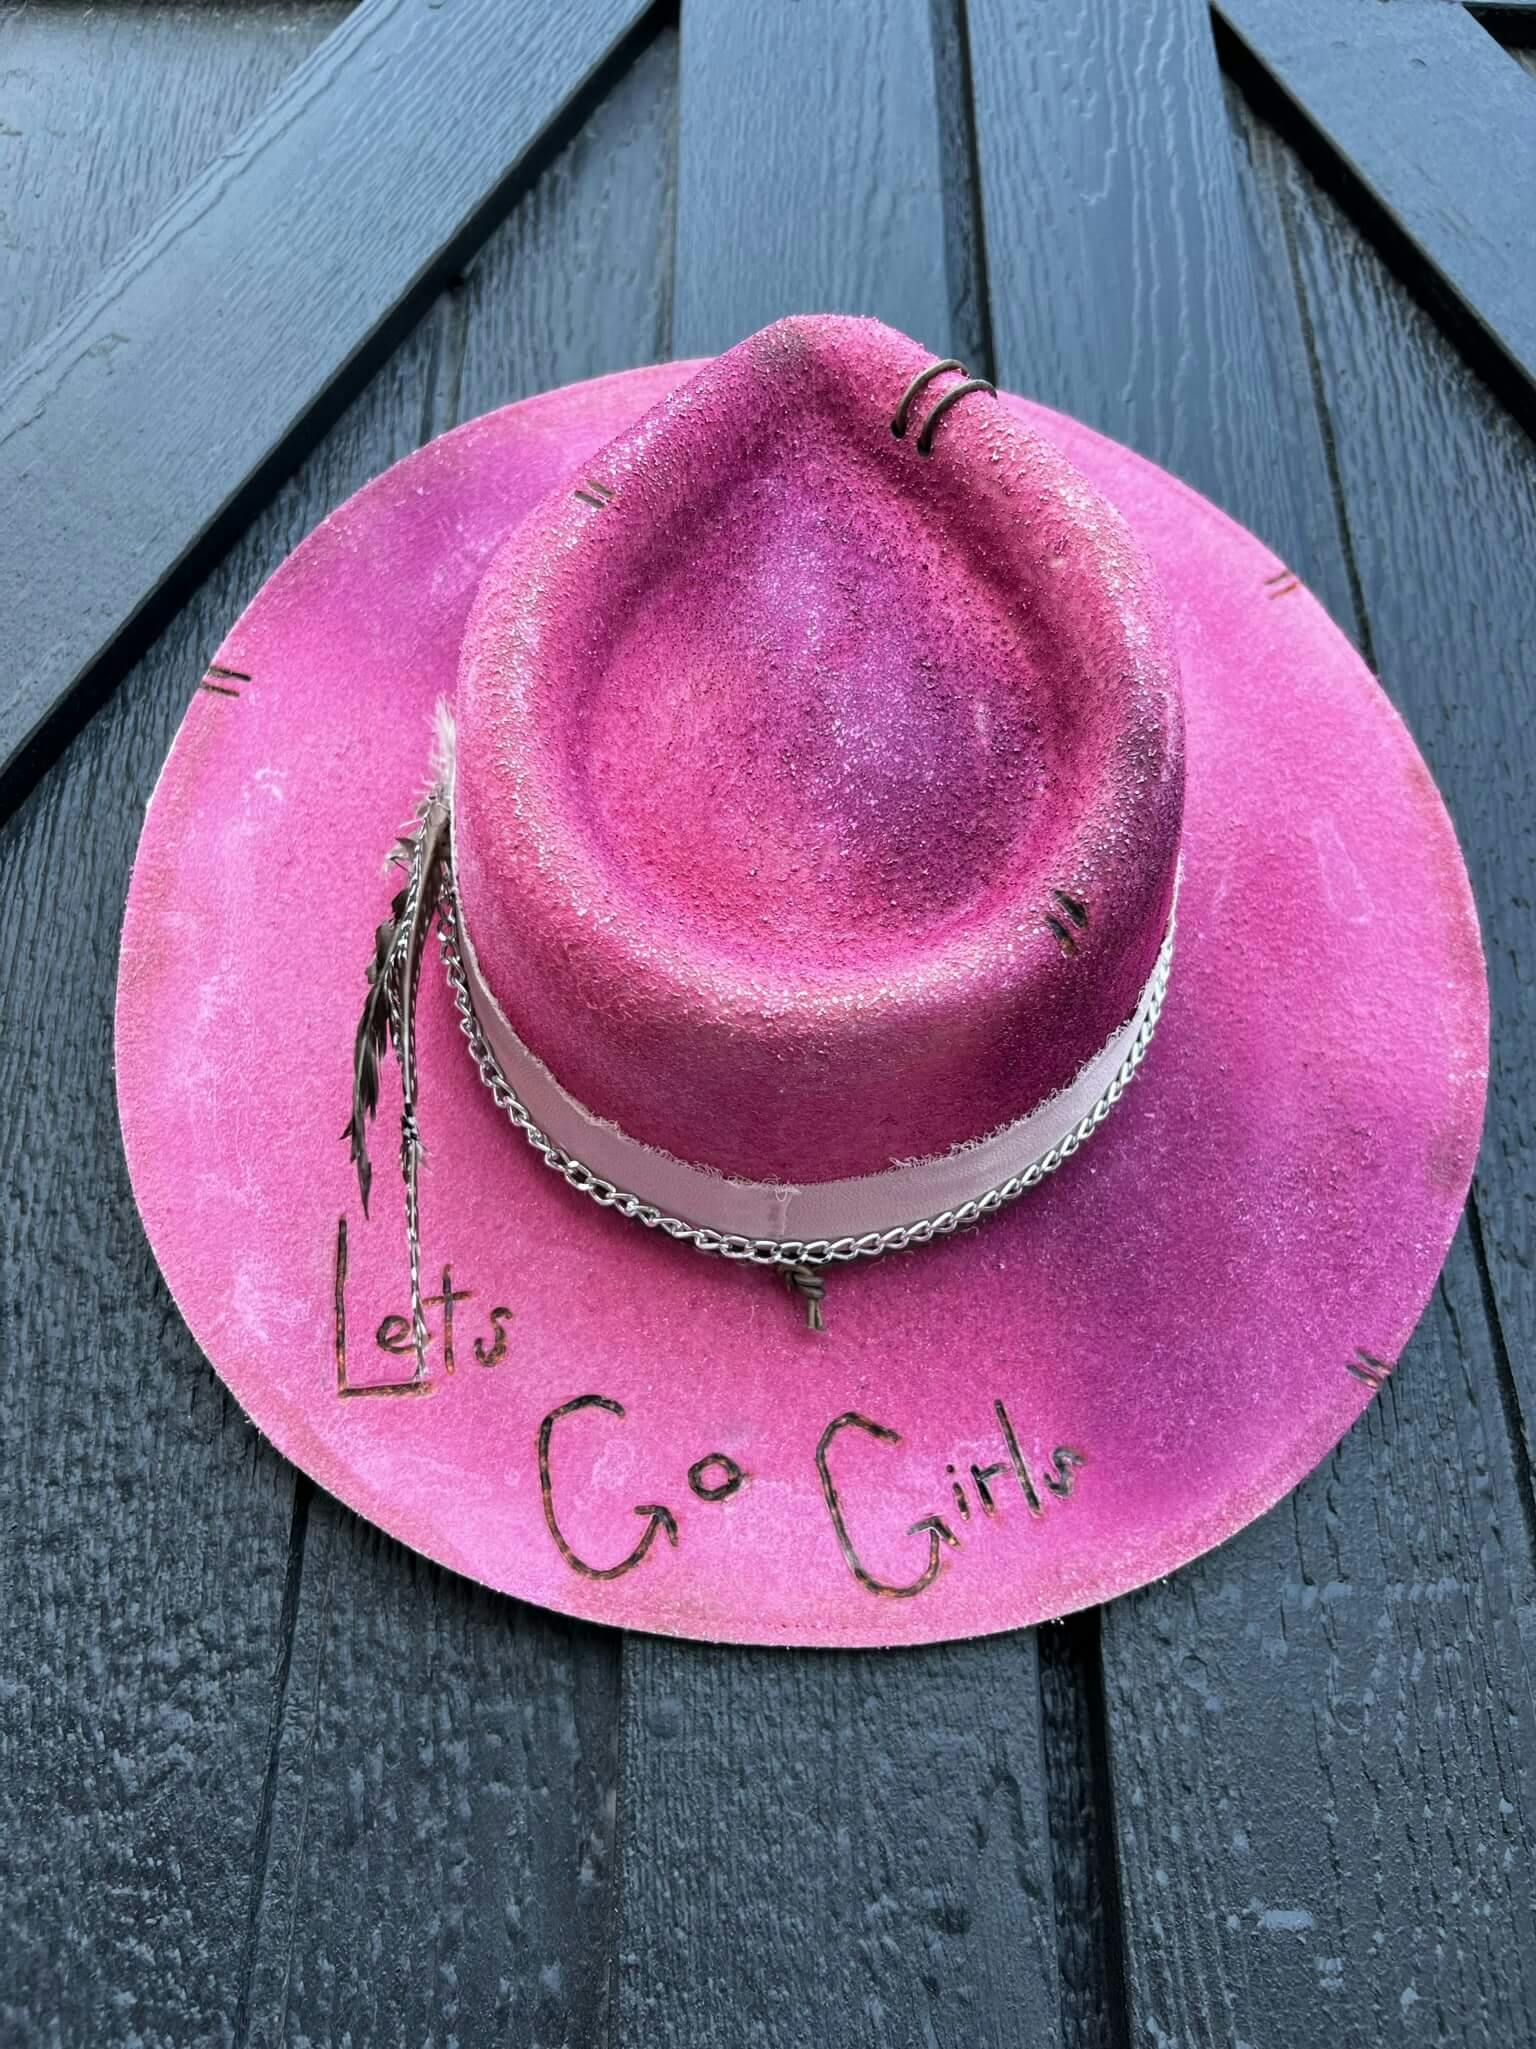 Let’s Go Girls - undefined - Lyric Lane Hat Co